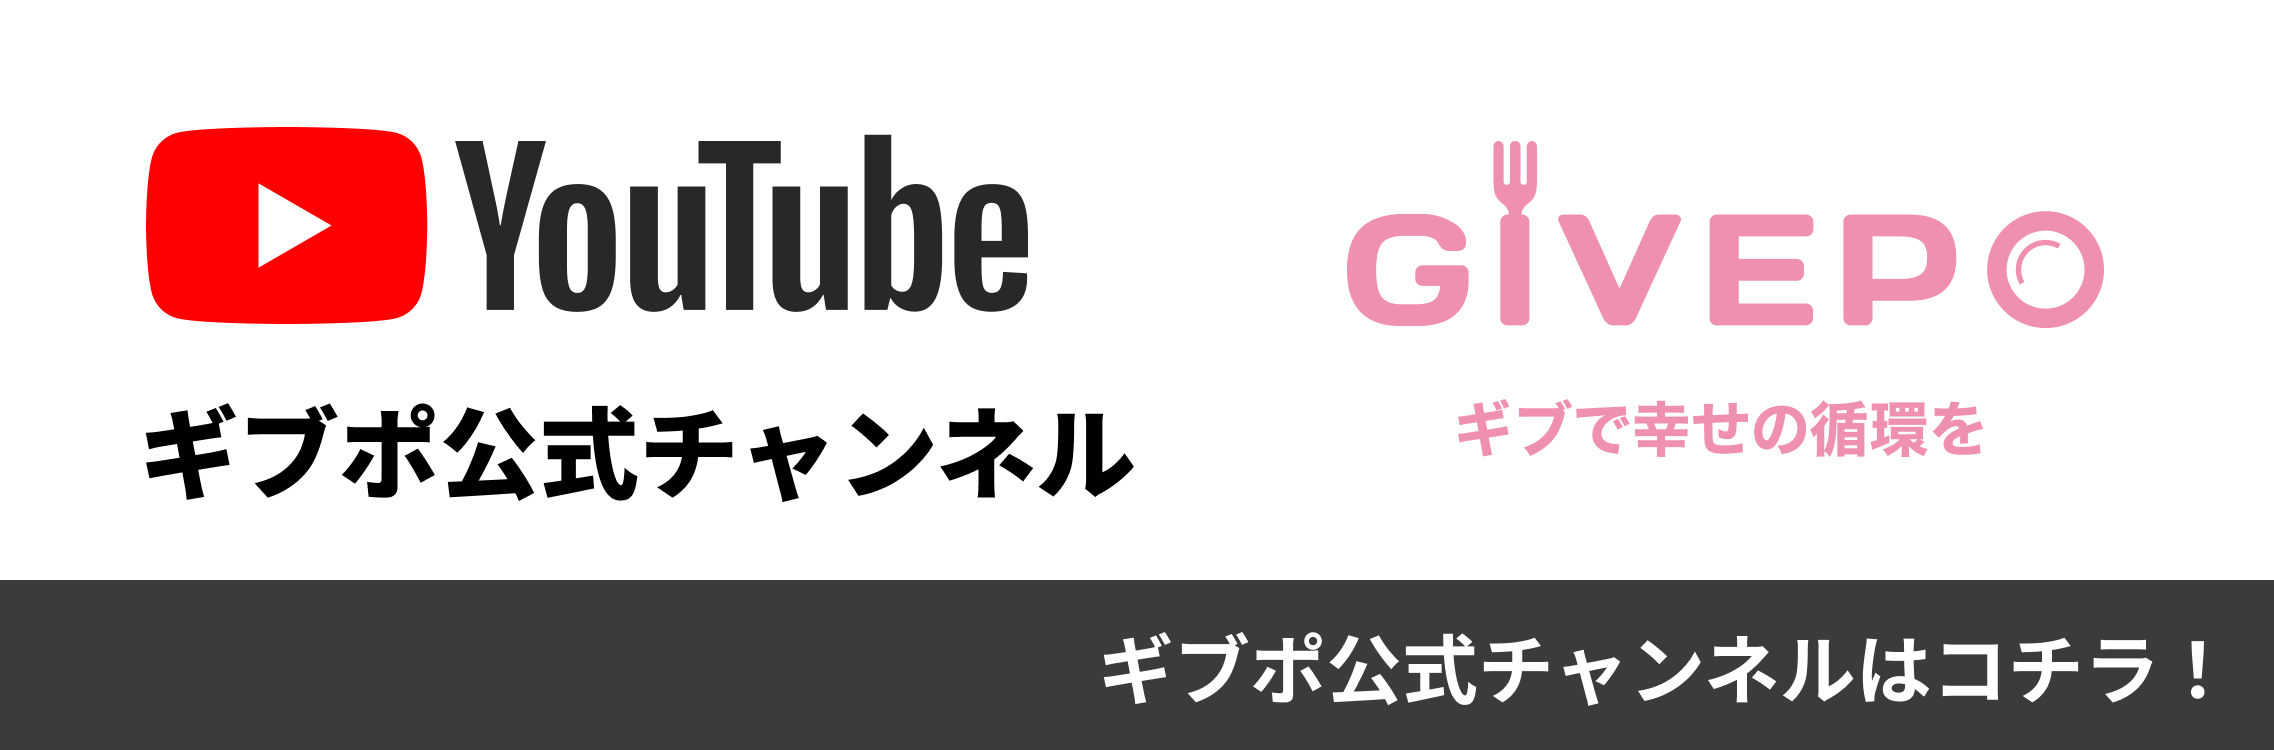 YouTube ギブポ公式チャンネル